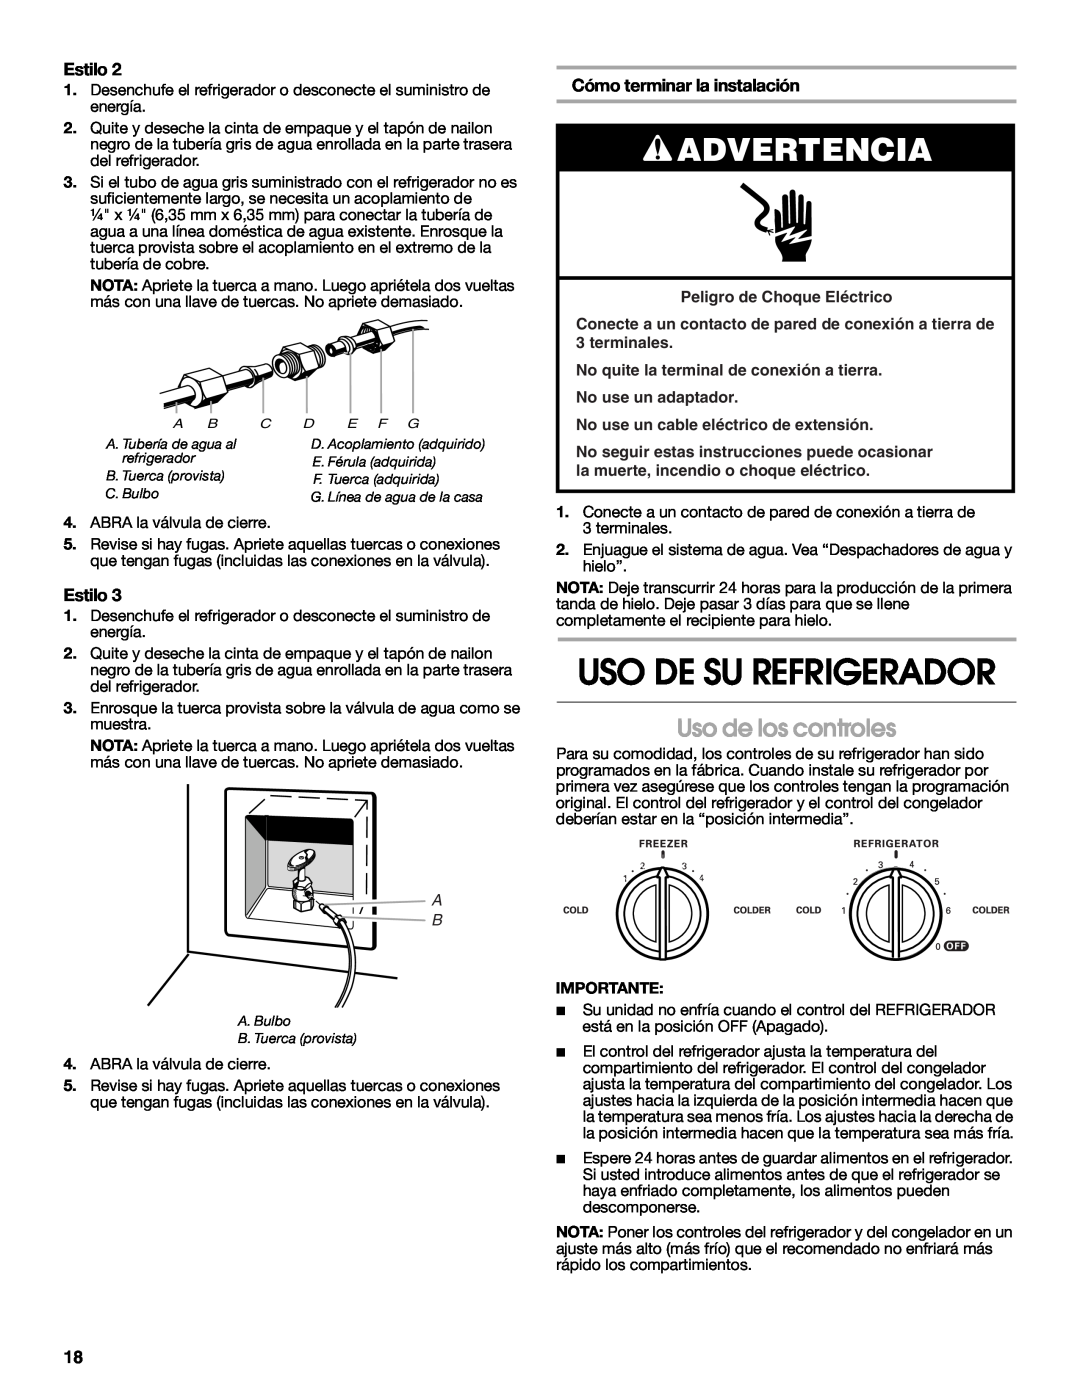 Whirlpool RS22AQXMQ01 Uso De Su Refrigerador, Uso de los controles, Estilo, Cómo terminar la instalación, Advertencia 